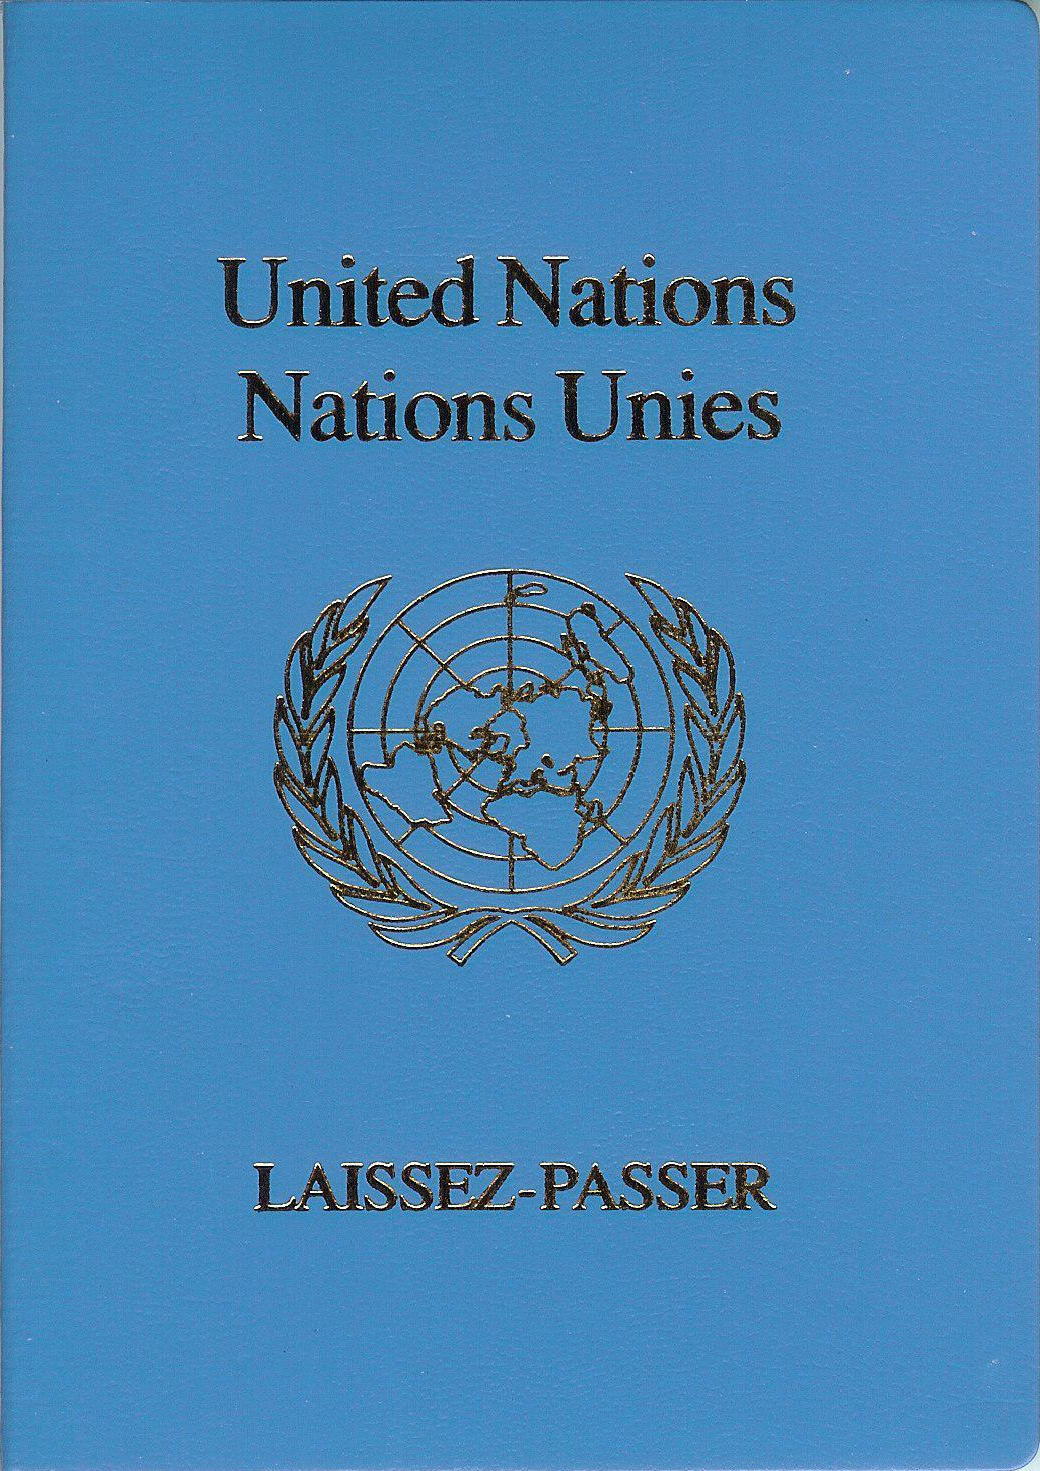 UN-laissez-passer